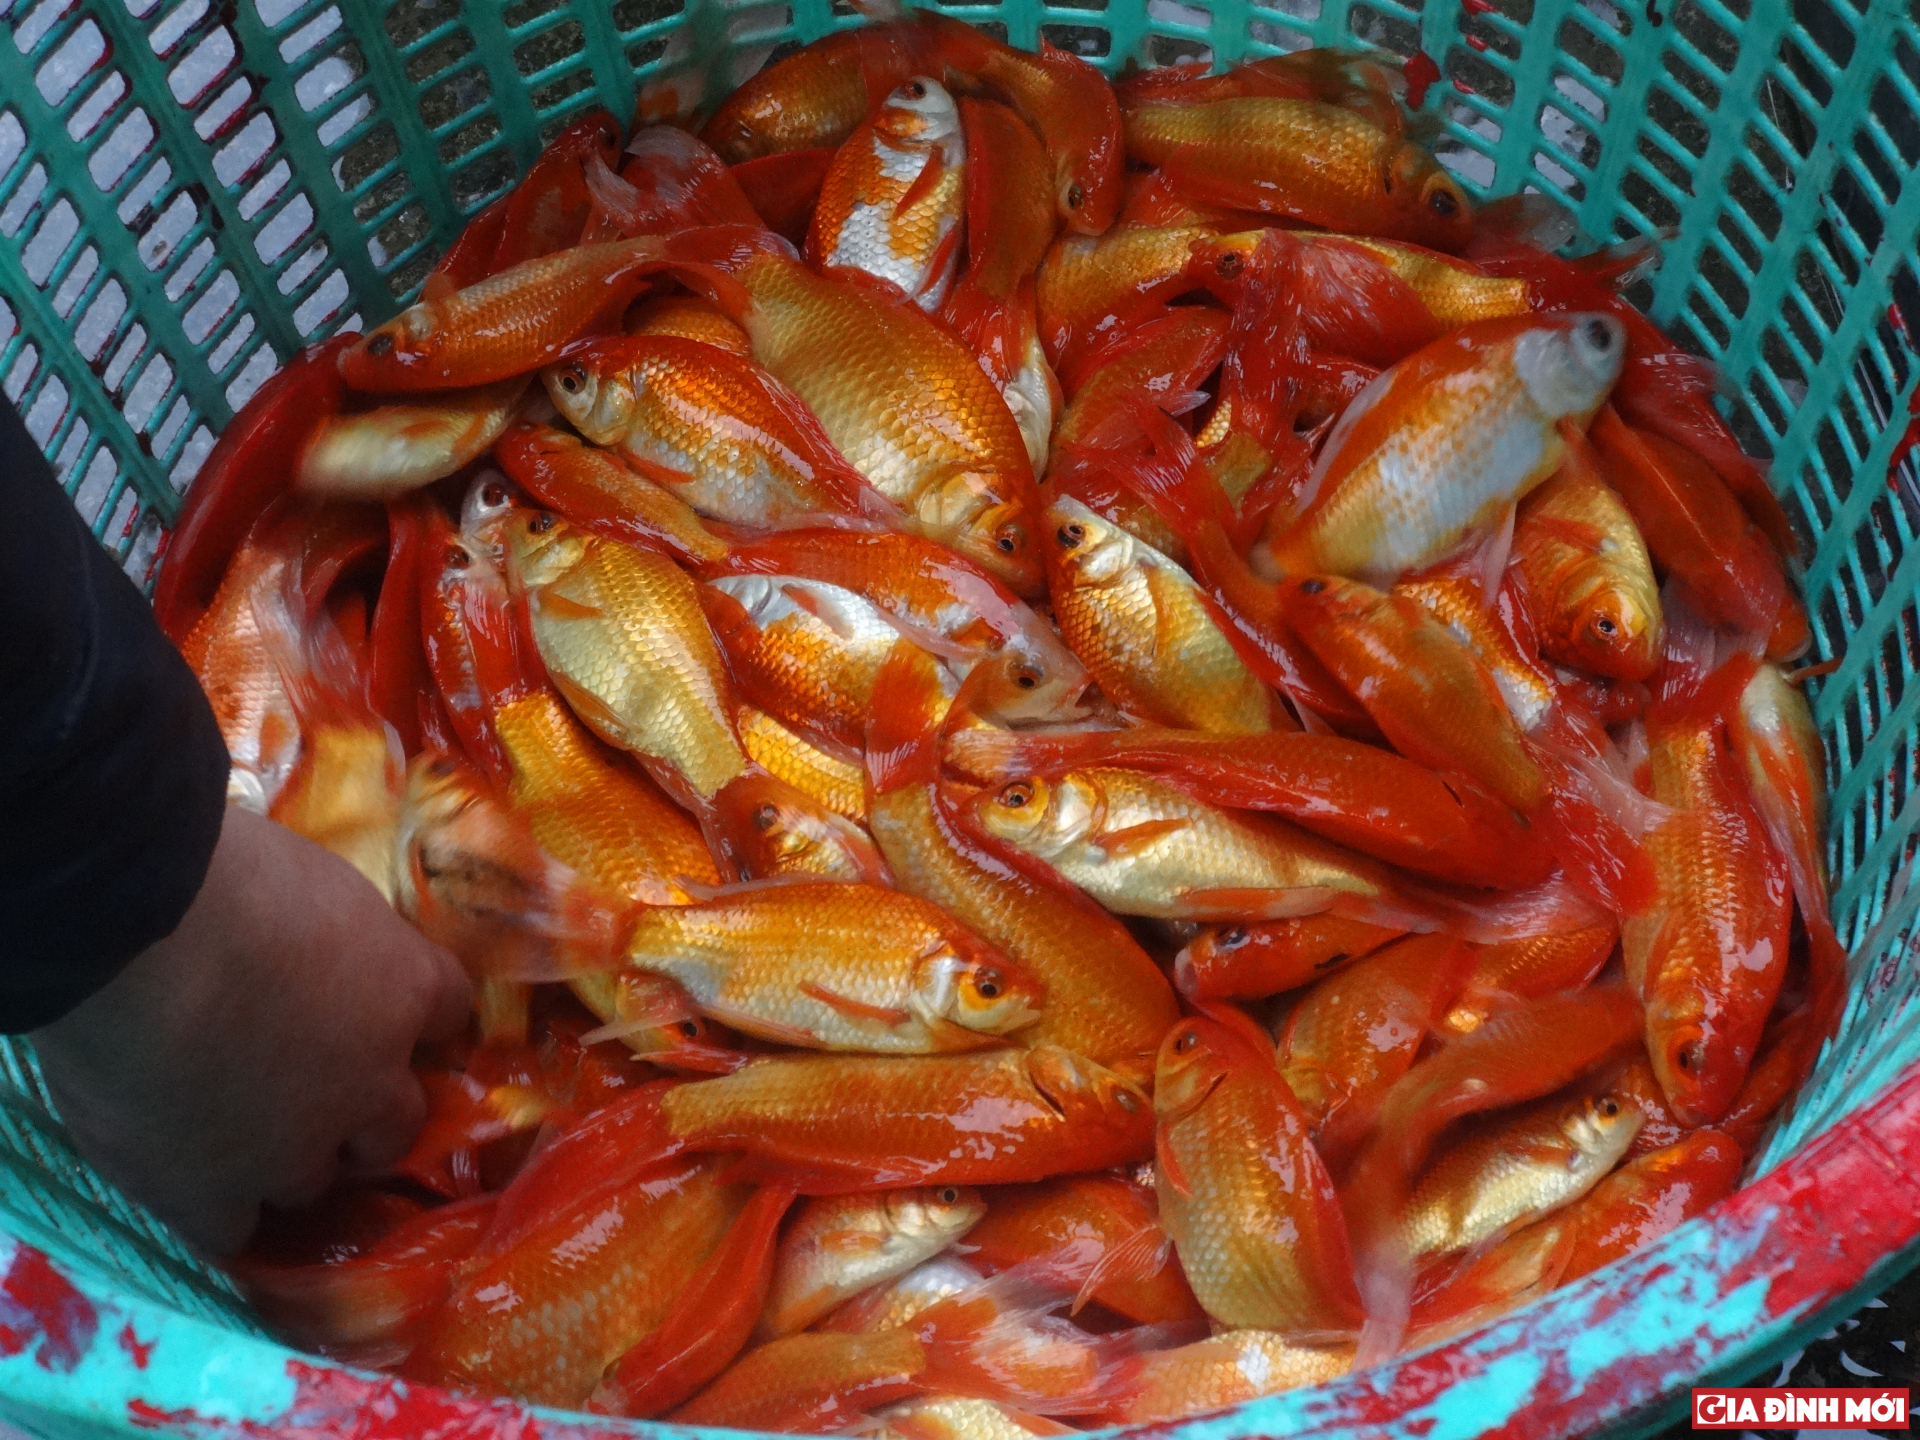 Hai loại cá vàng: cá vàng ta con nhỏ, thon, da bóng và cá vàng lai màu đậm, con to, giá bán dao động 100.000-150.000 đồng/kg được mua bán nhiều nhất.